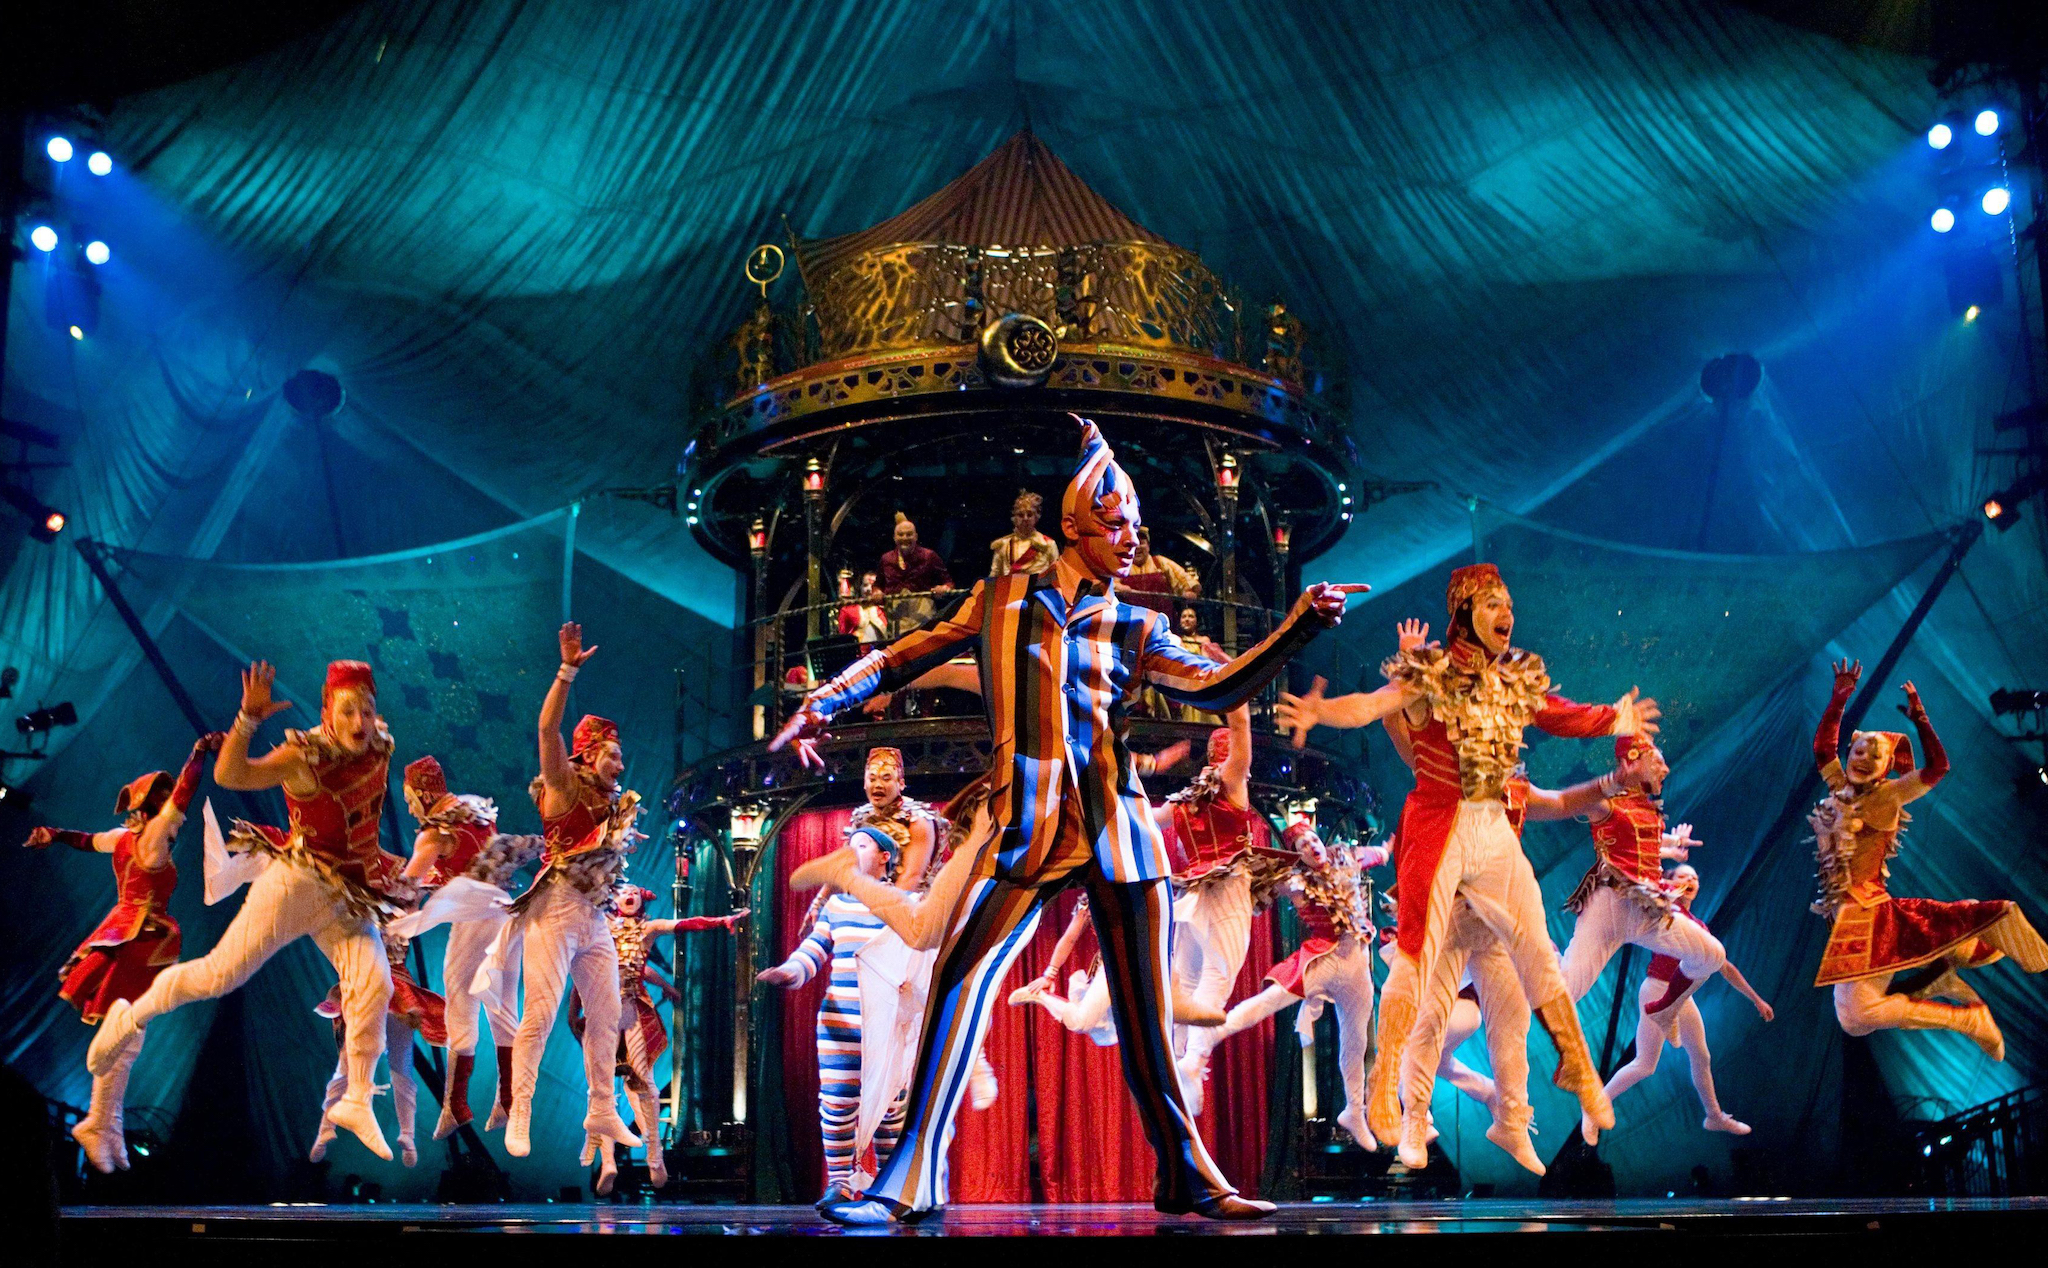 Đoàn xiếc nổi tiếng Cirque du Soleil đệ đơn phá sản do phải dừng hoạt động quá lâu vì đại dịch